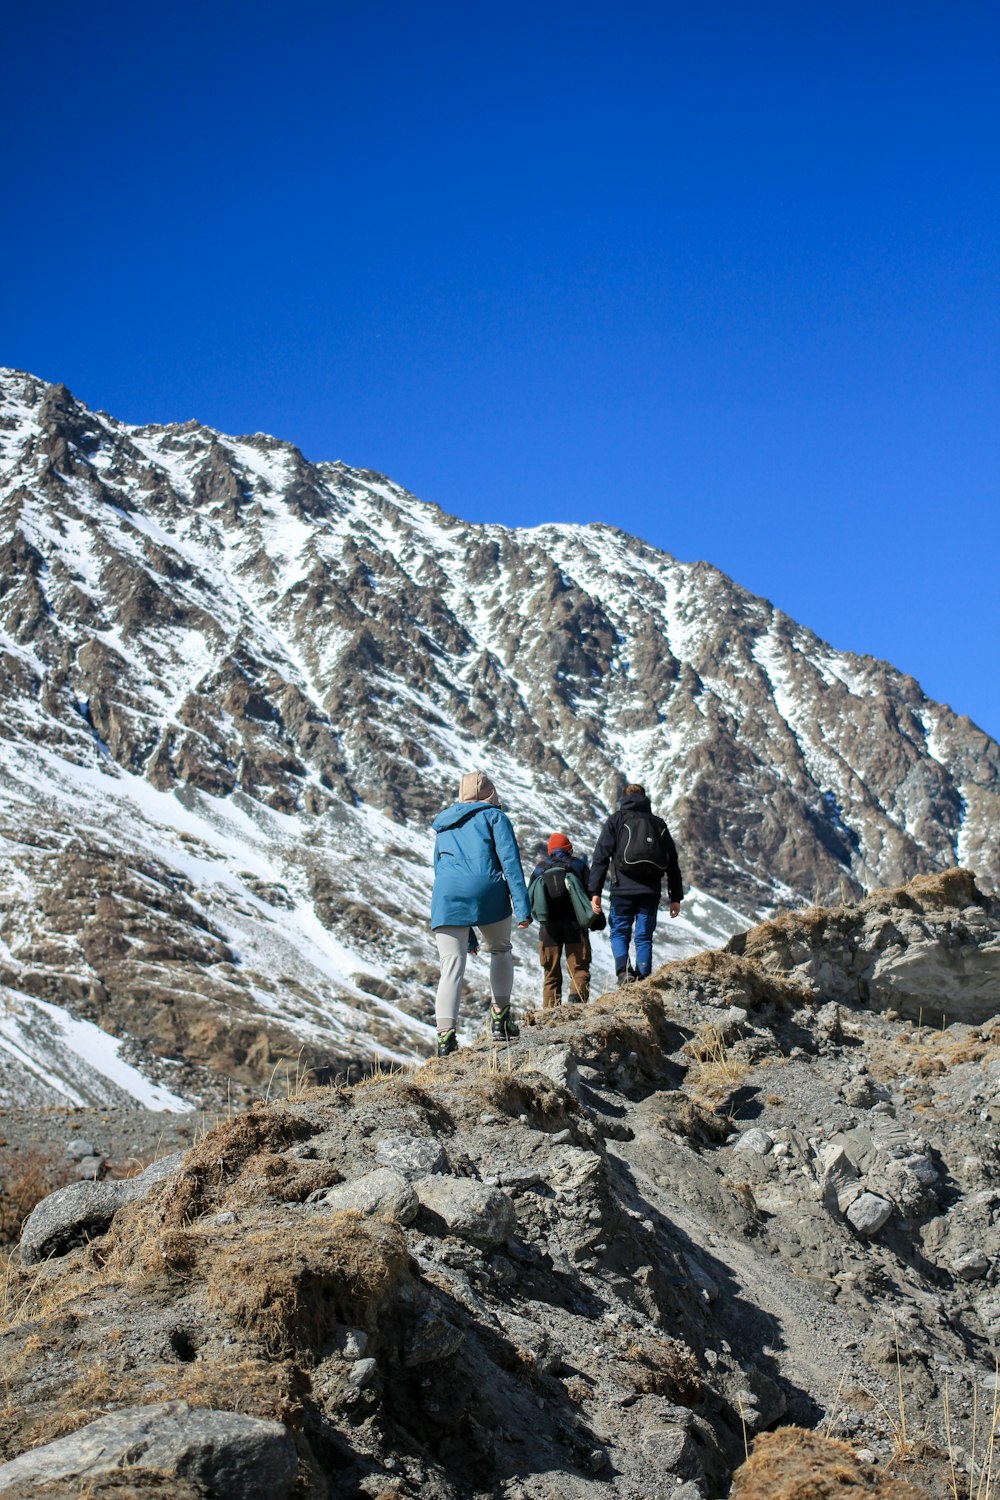 2 men hiking on rocky mountain during daytime